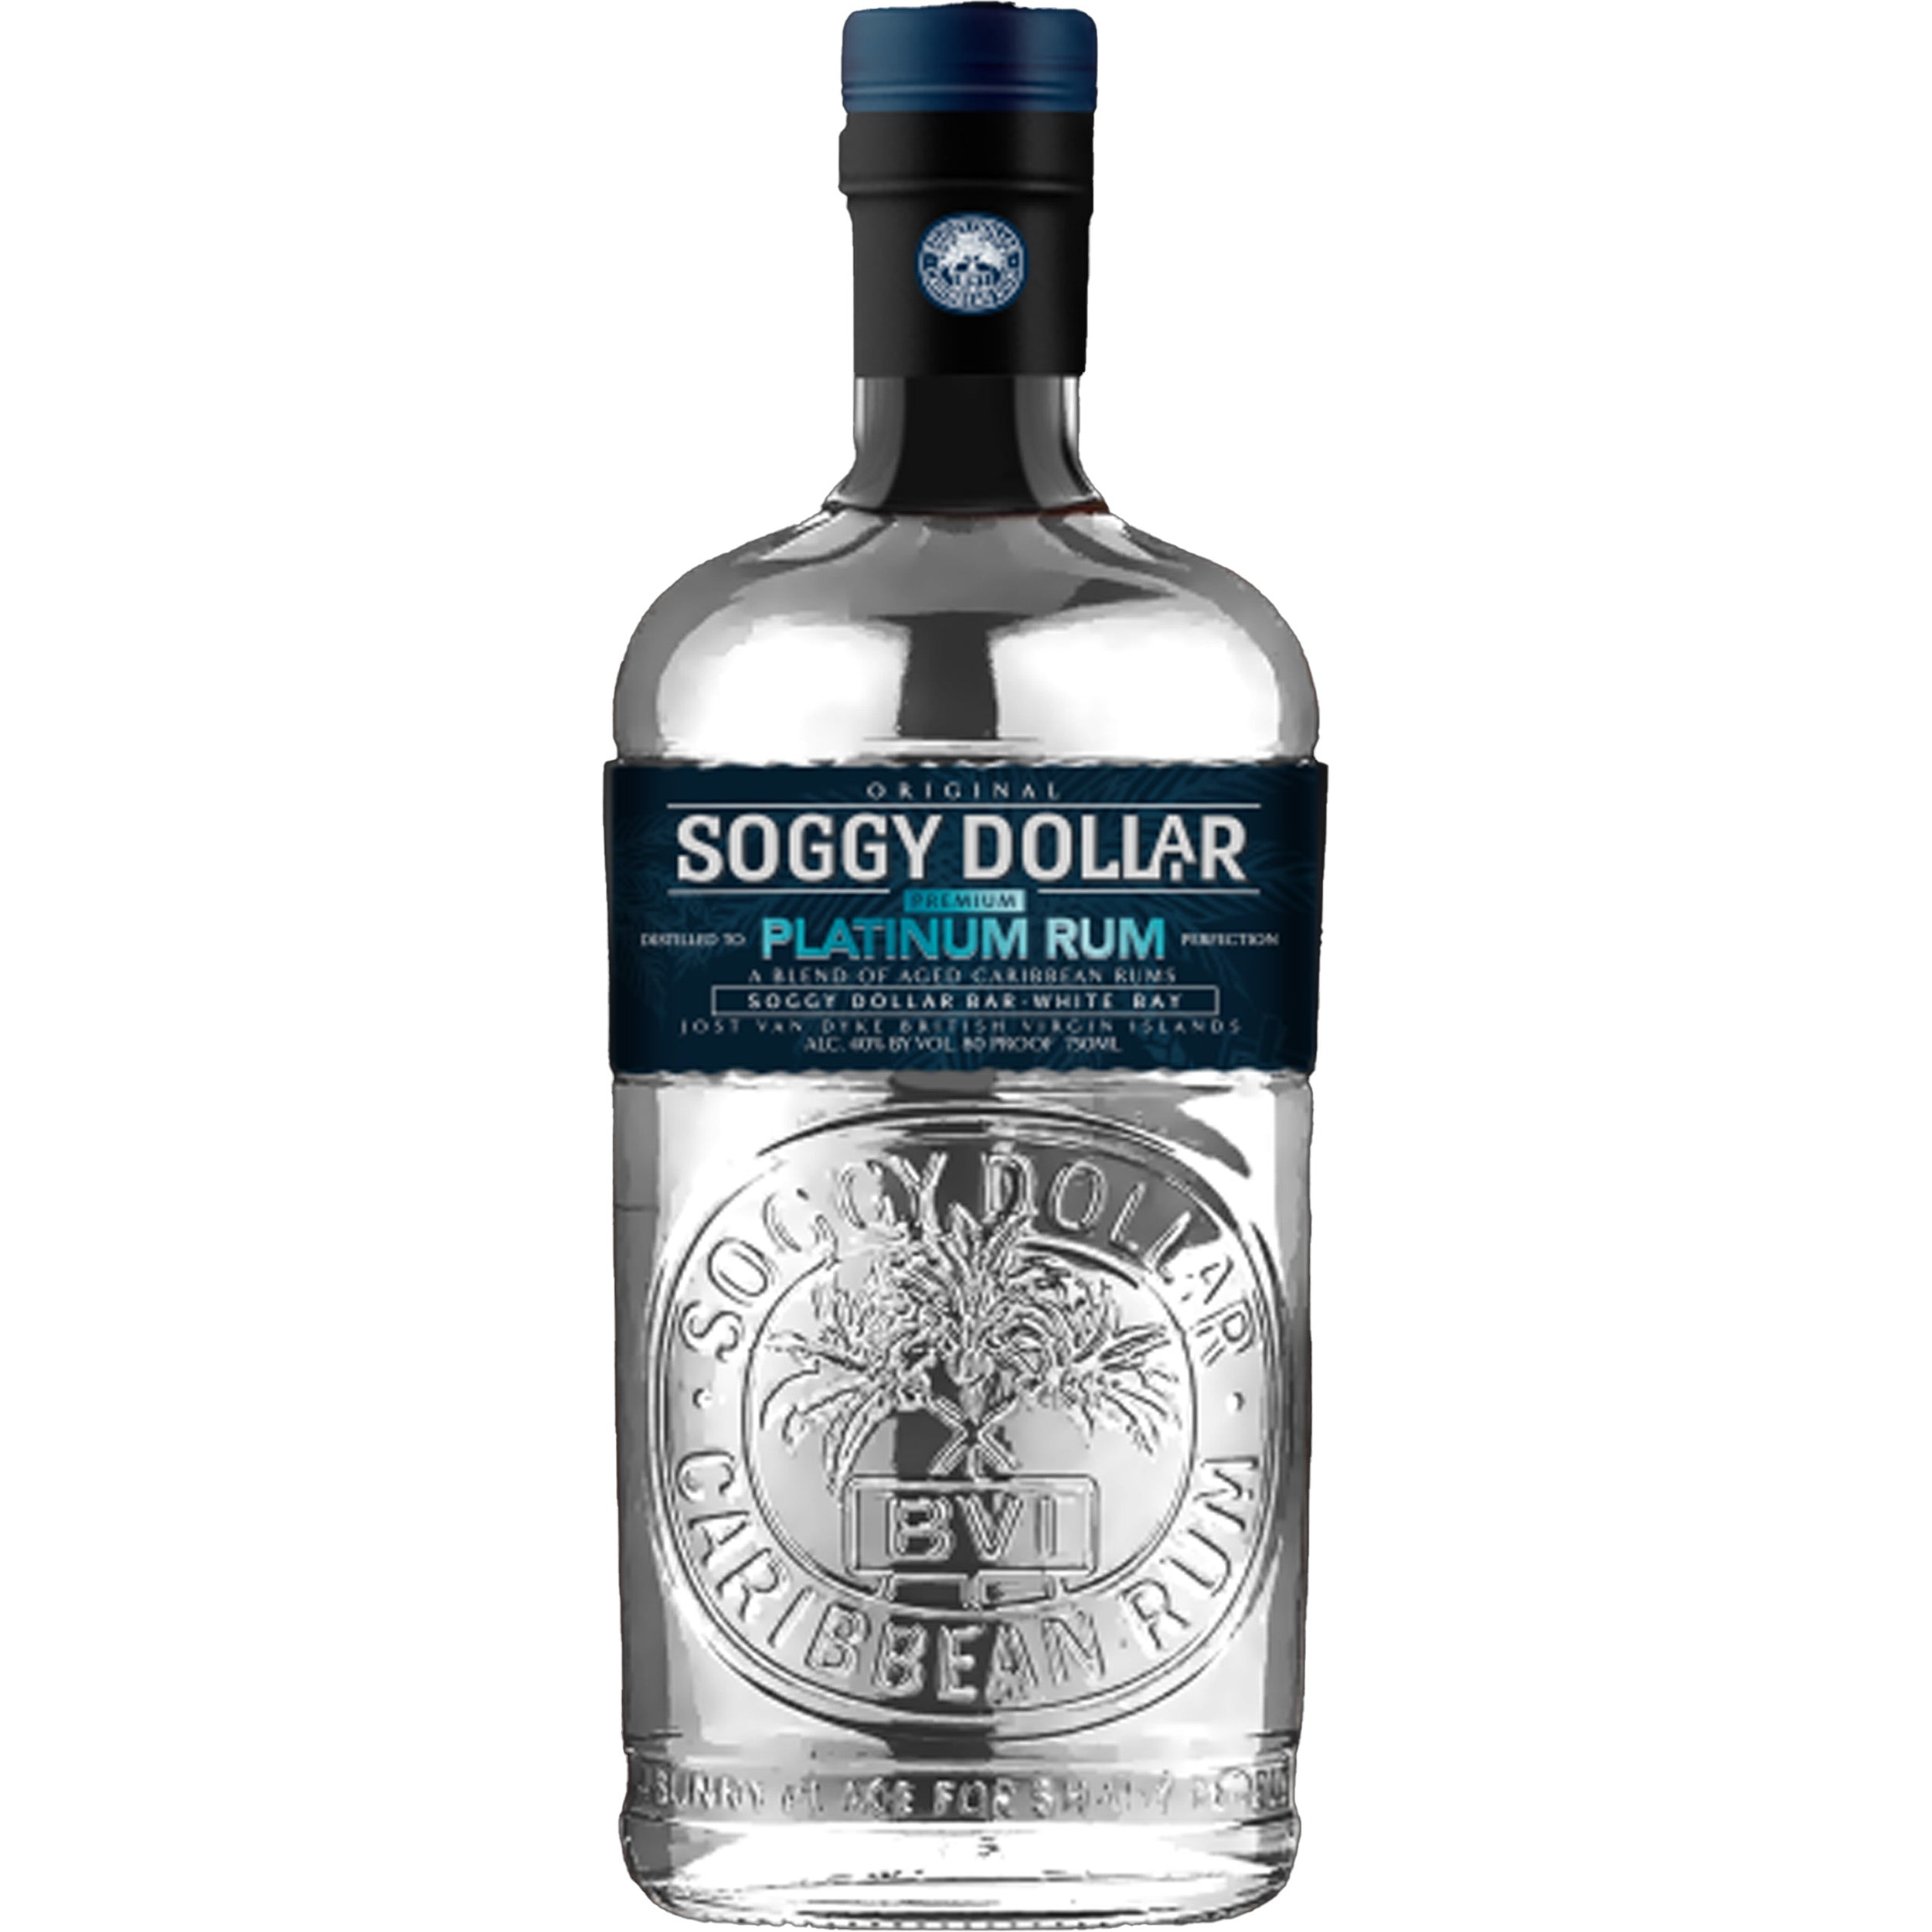 Soggy Dollar Platinum Rum